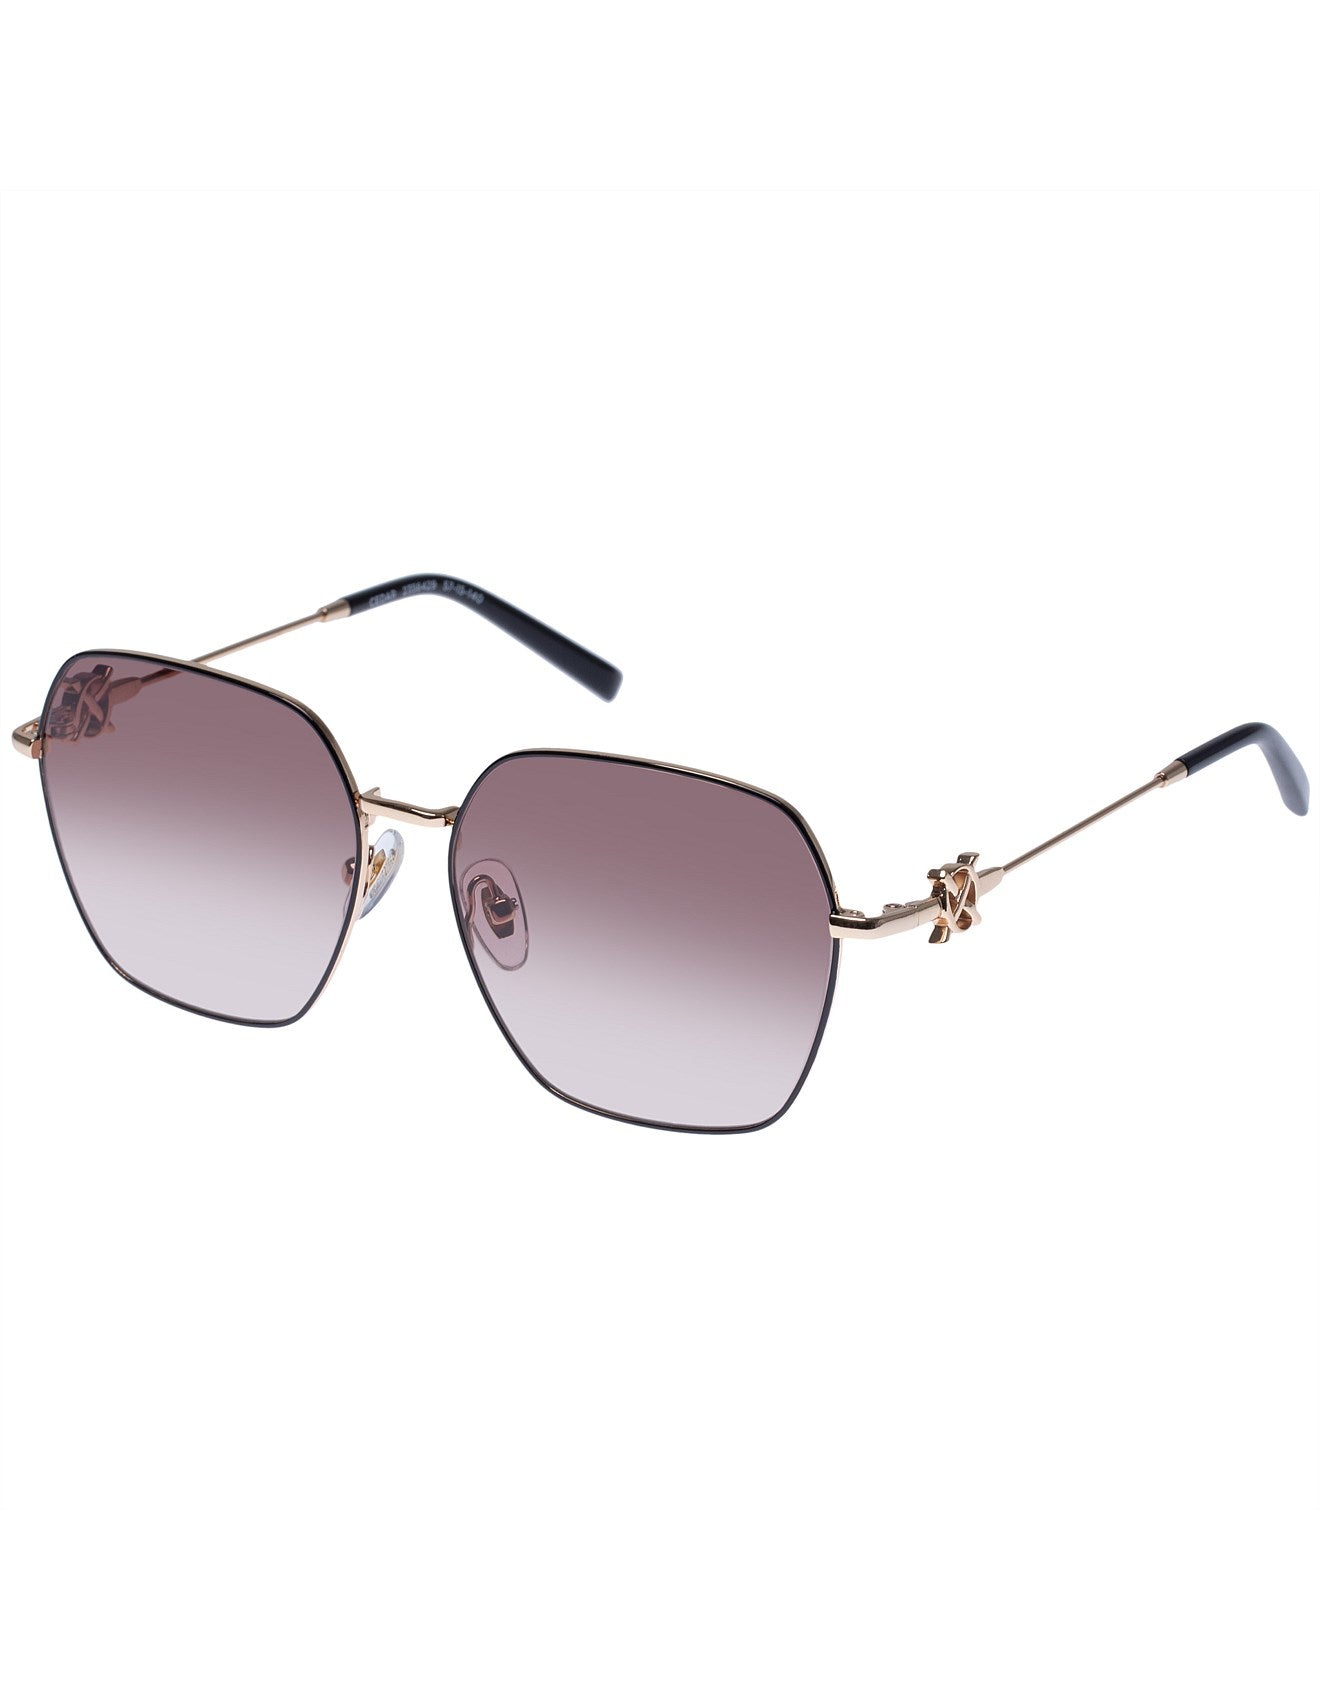 Oroton Sunglasses - Cedar - Gold/Blush